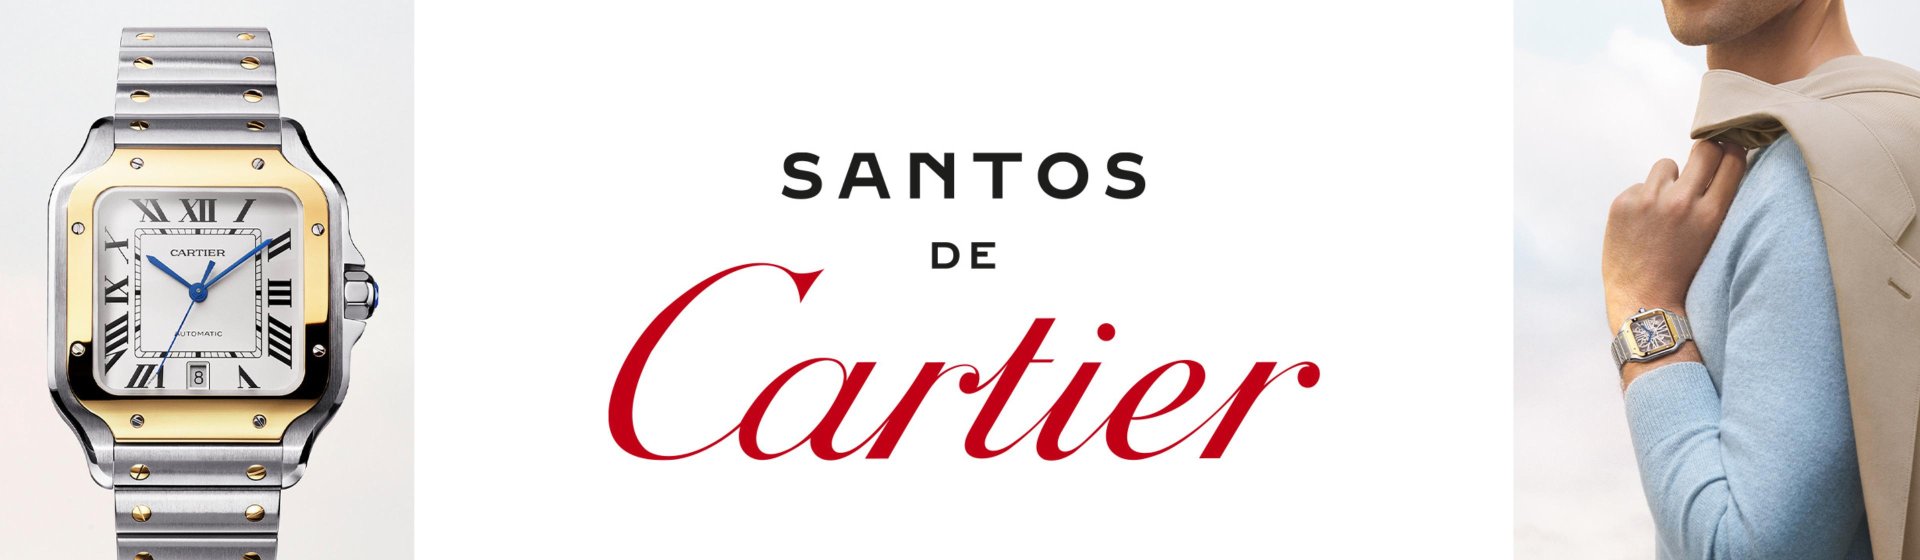 Cartier SantosDeCartier Duehrkoop Slider 3840x1120px